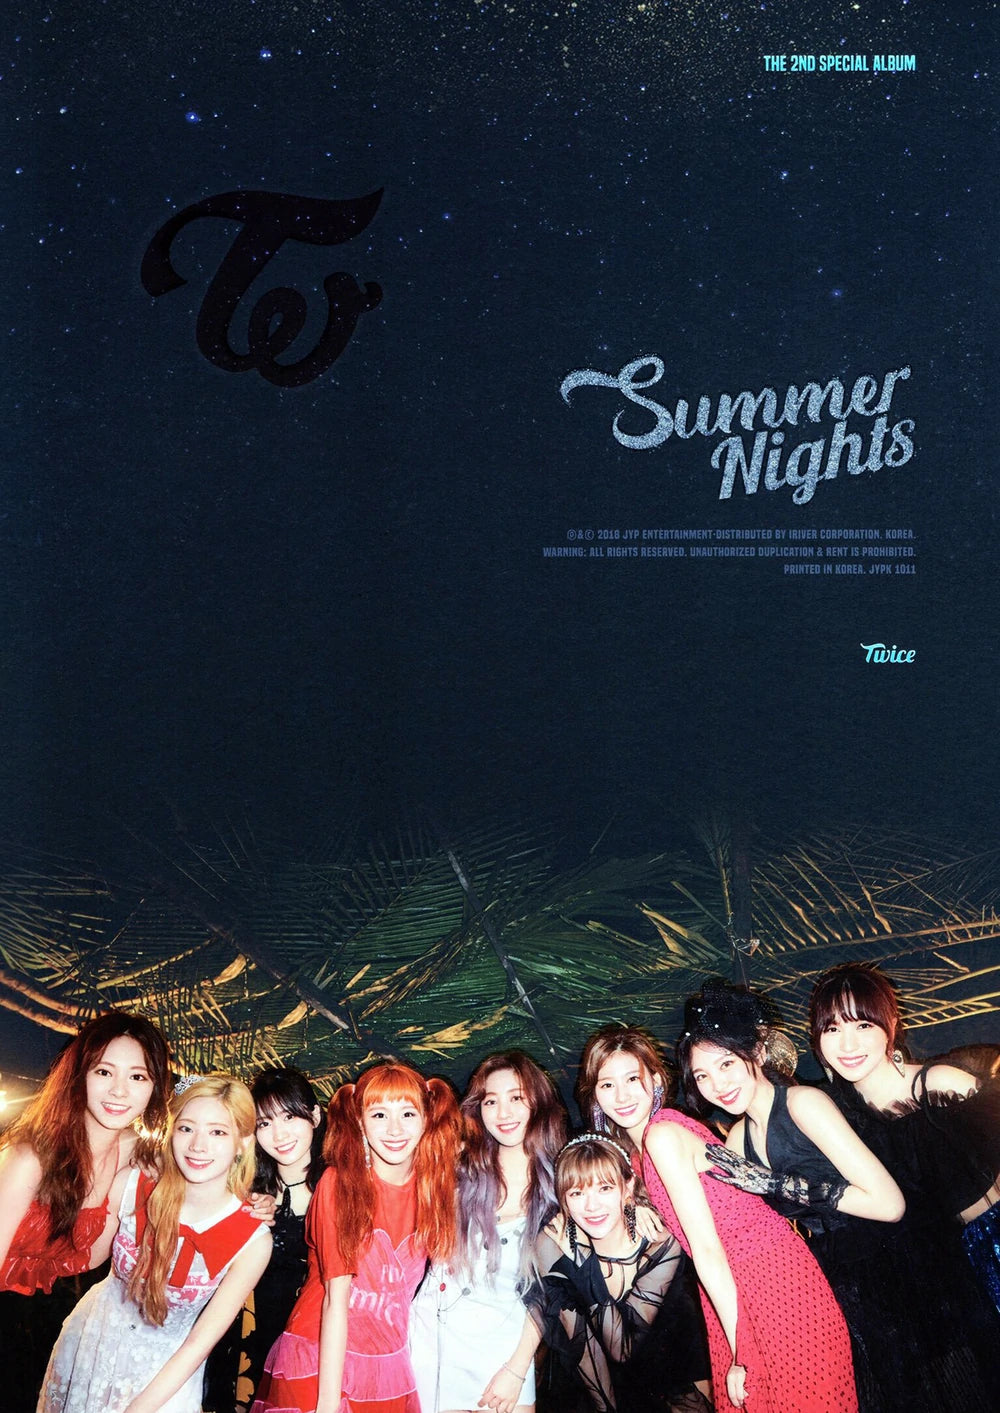 TWICE 트와이스 - 2nd Special Album 'Summer Nights'